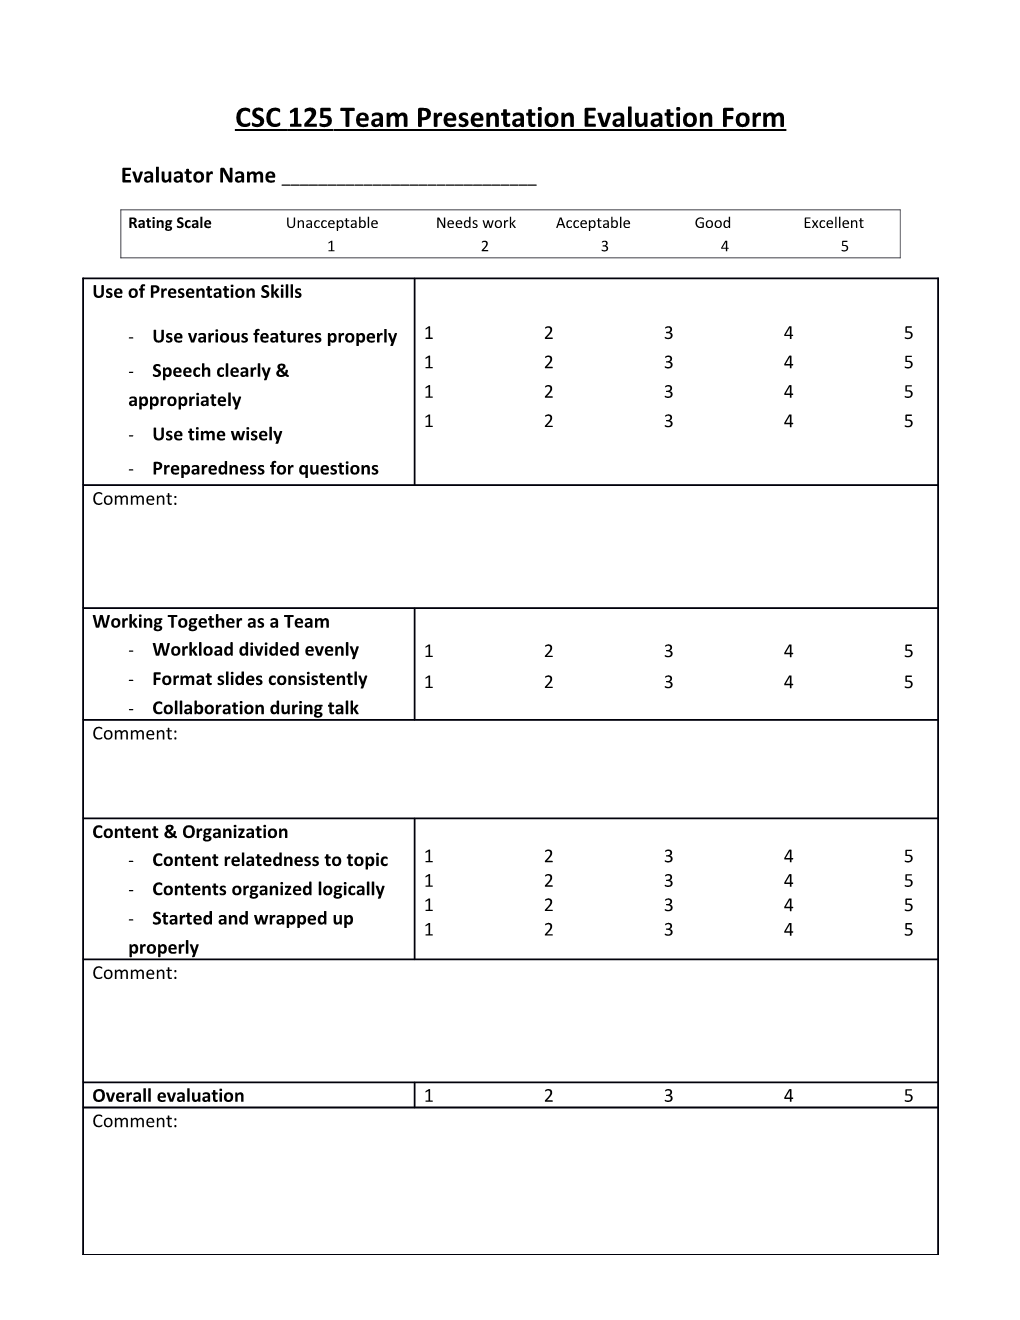 CSC 125 Team Presentation Evaluation Form